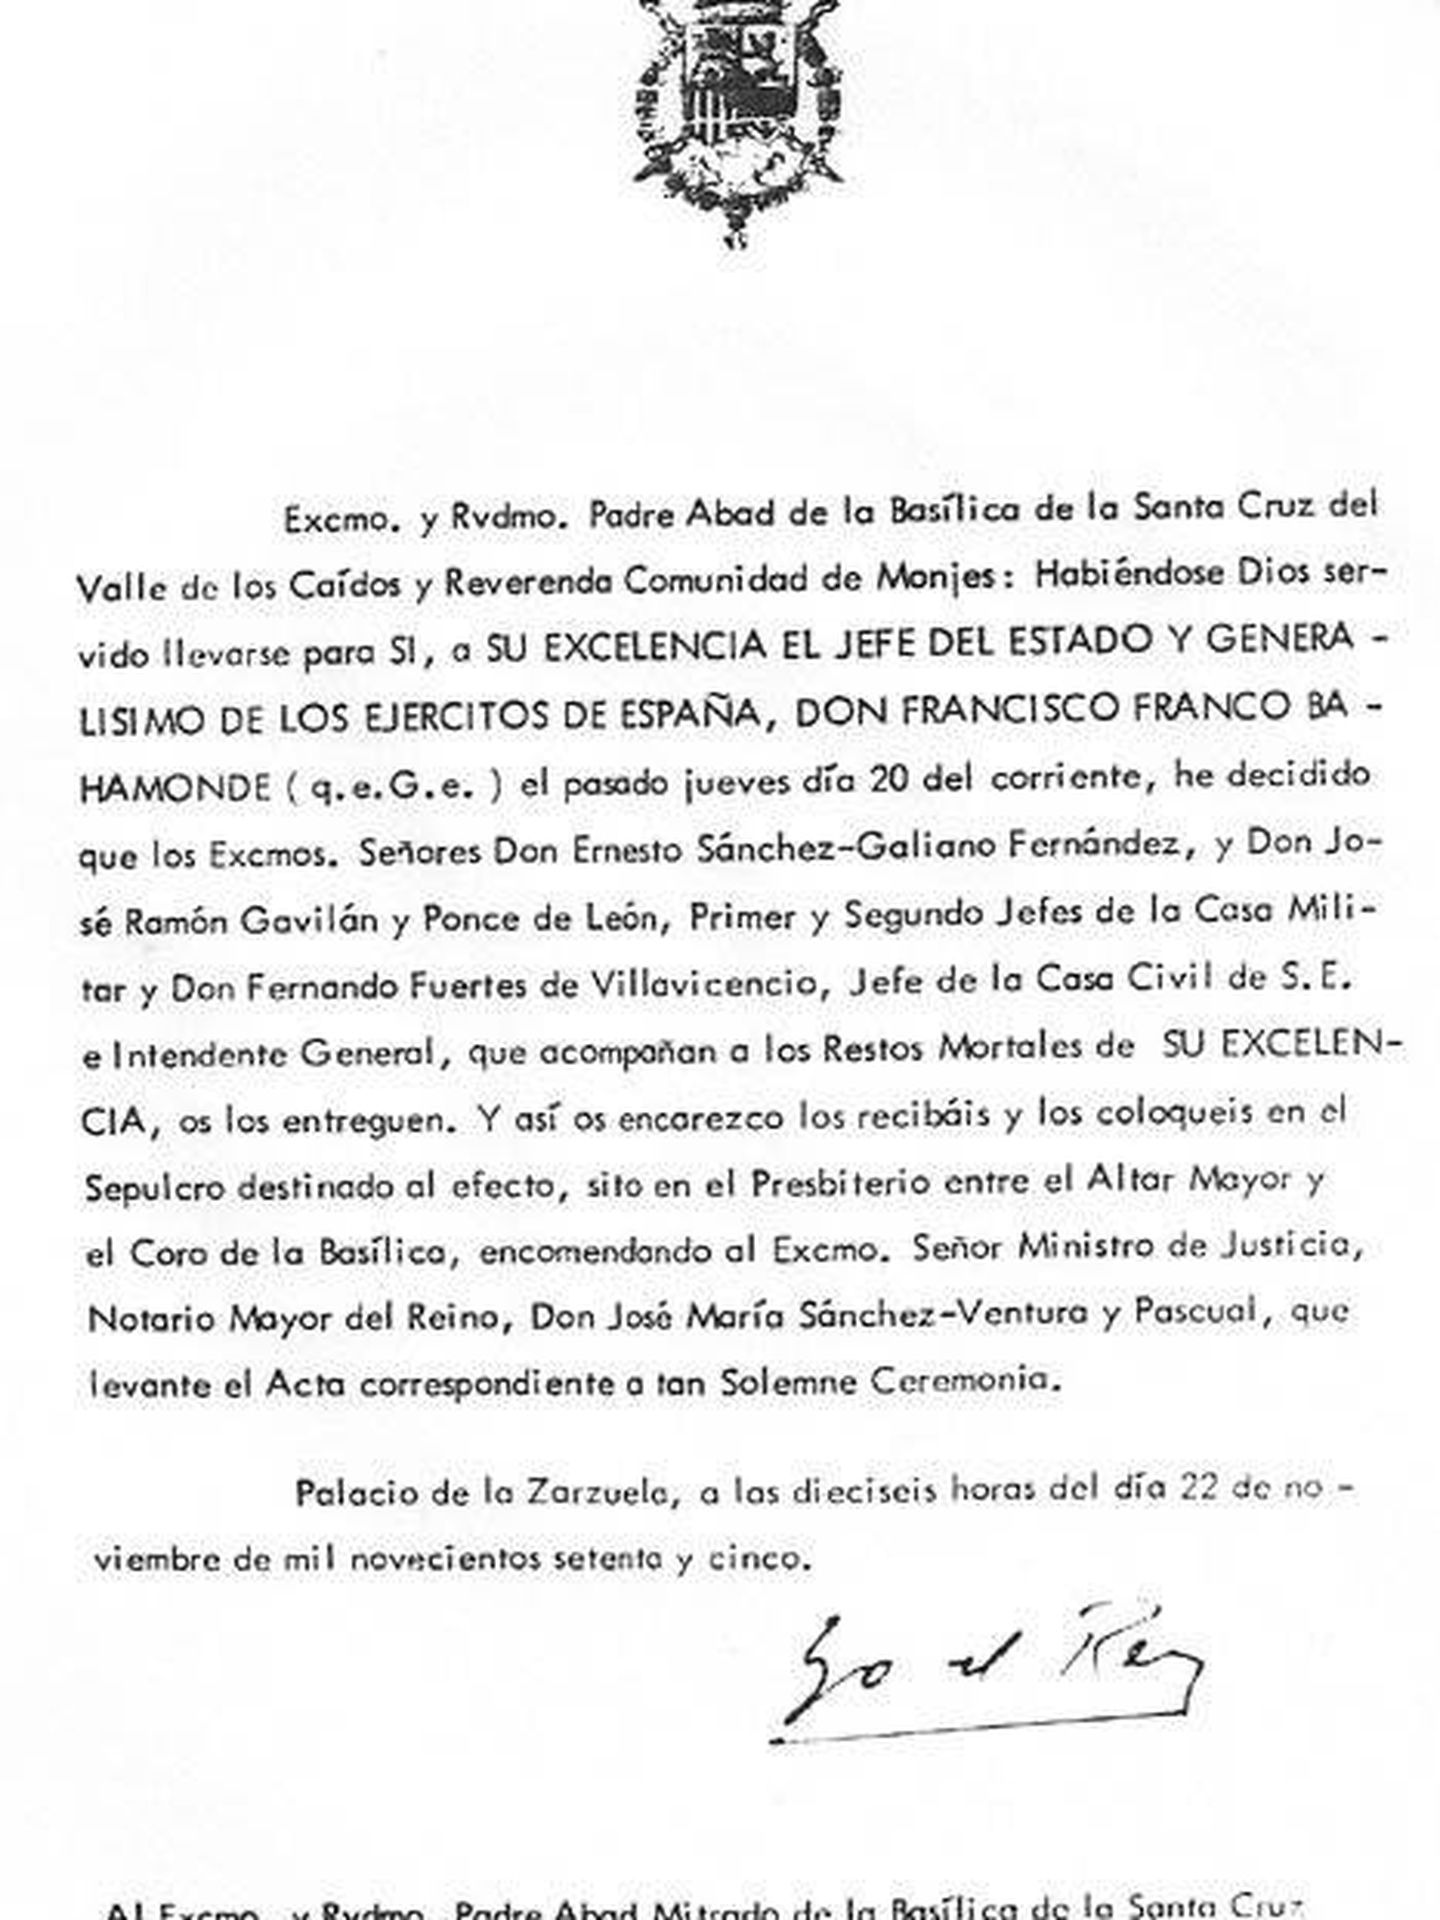 La carta que el rey Juan Carlos I mandó el 22 de noviembre de 1975 al abad de la basílica del Valle de los Caídos y en la que le ordena que entierre allí al dictador Francisco Franco. (Twitter Fundación Nacional Francisco Franco)